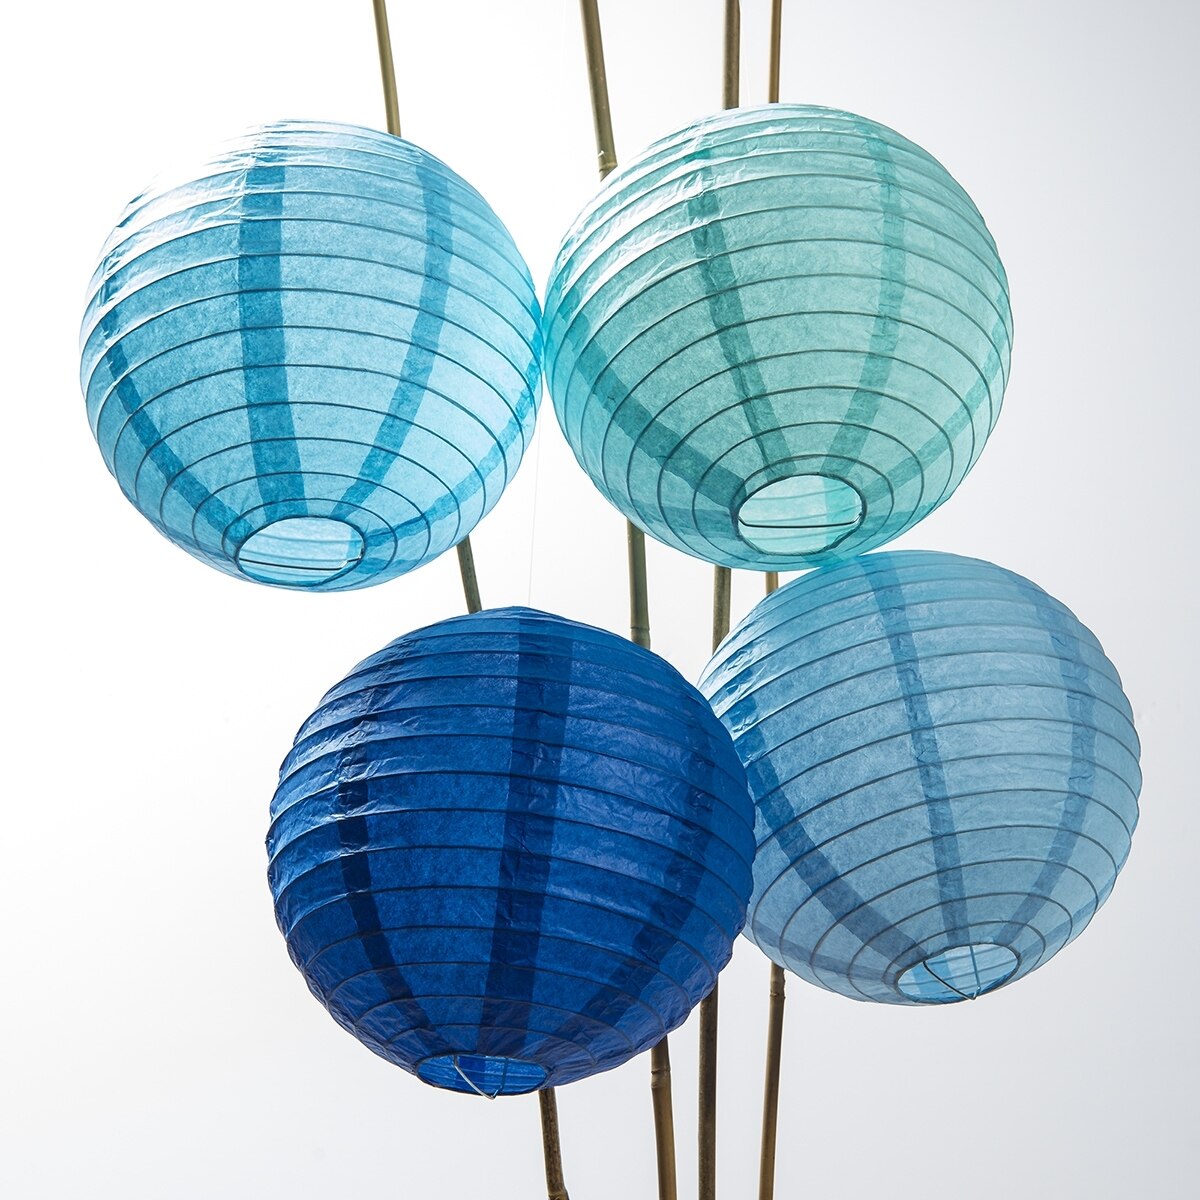 https://www.paperlanternstore.com/cdn/shop/products/SL8-BL12-12-pack-of-8-inch-multicolor-blue-no-frills-paper-lanterns__64234.1539991817.1280.1280.jpg?v=1614220355